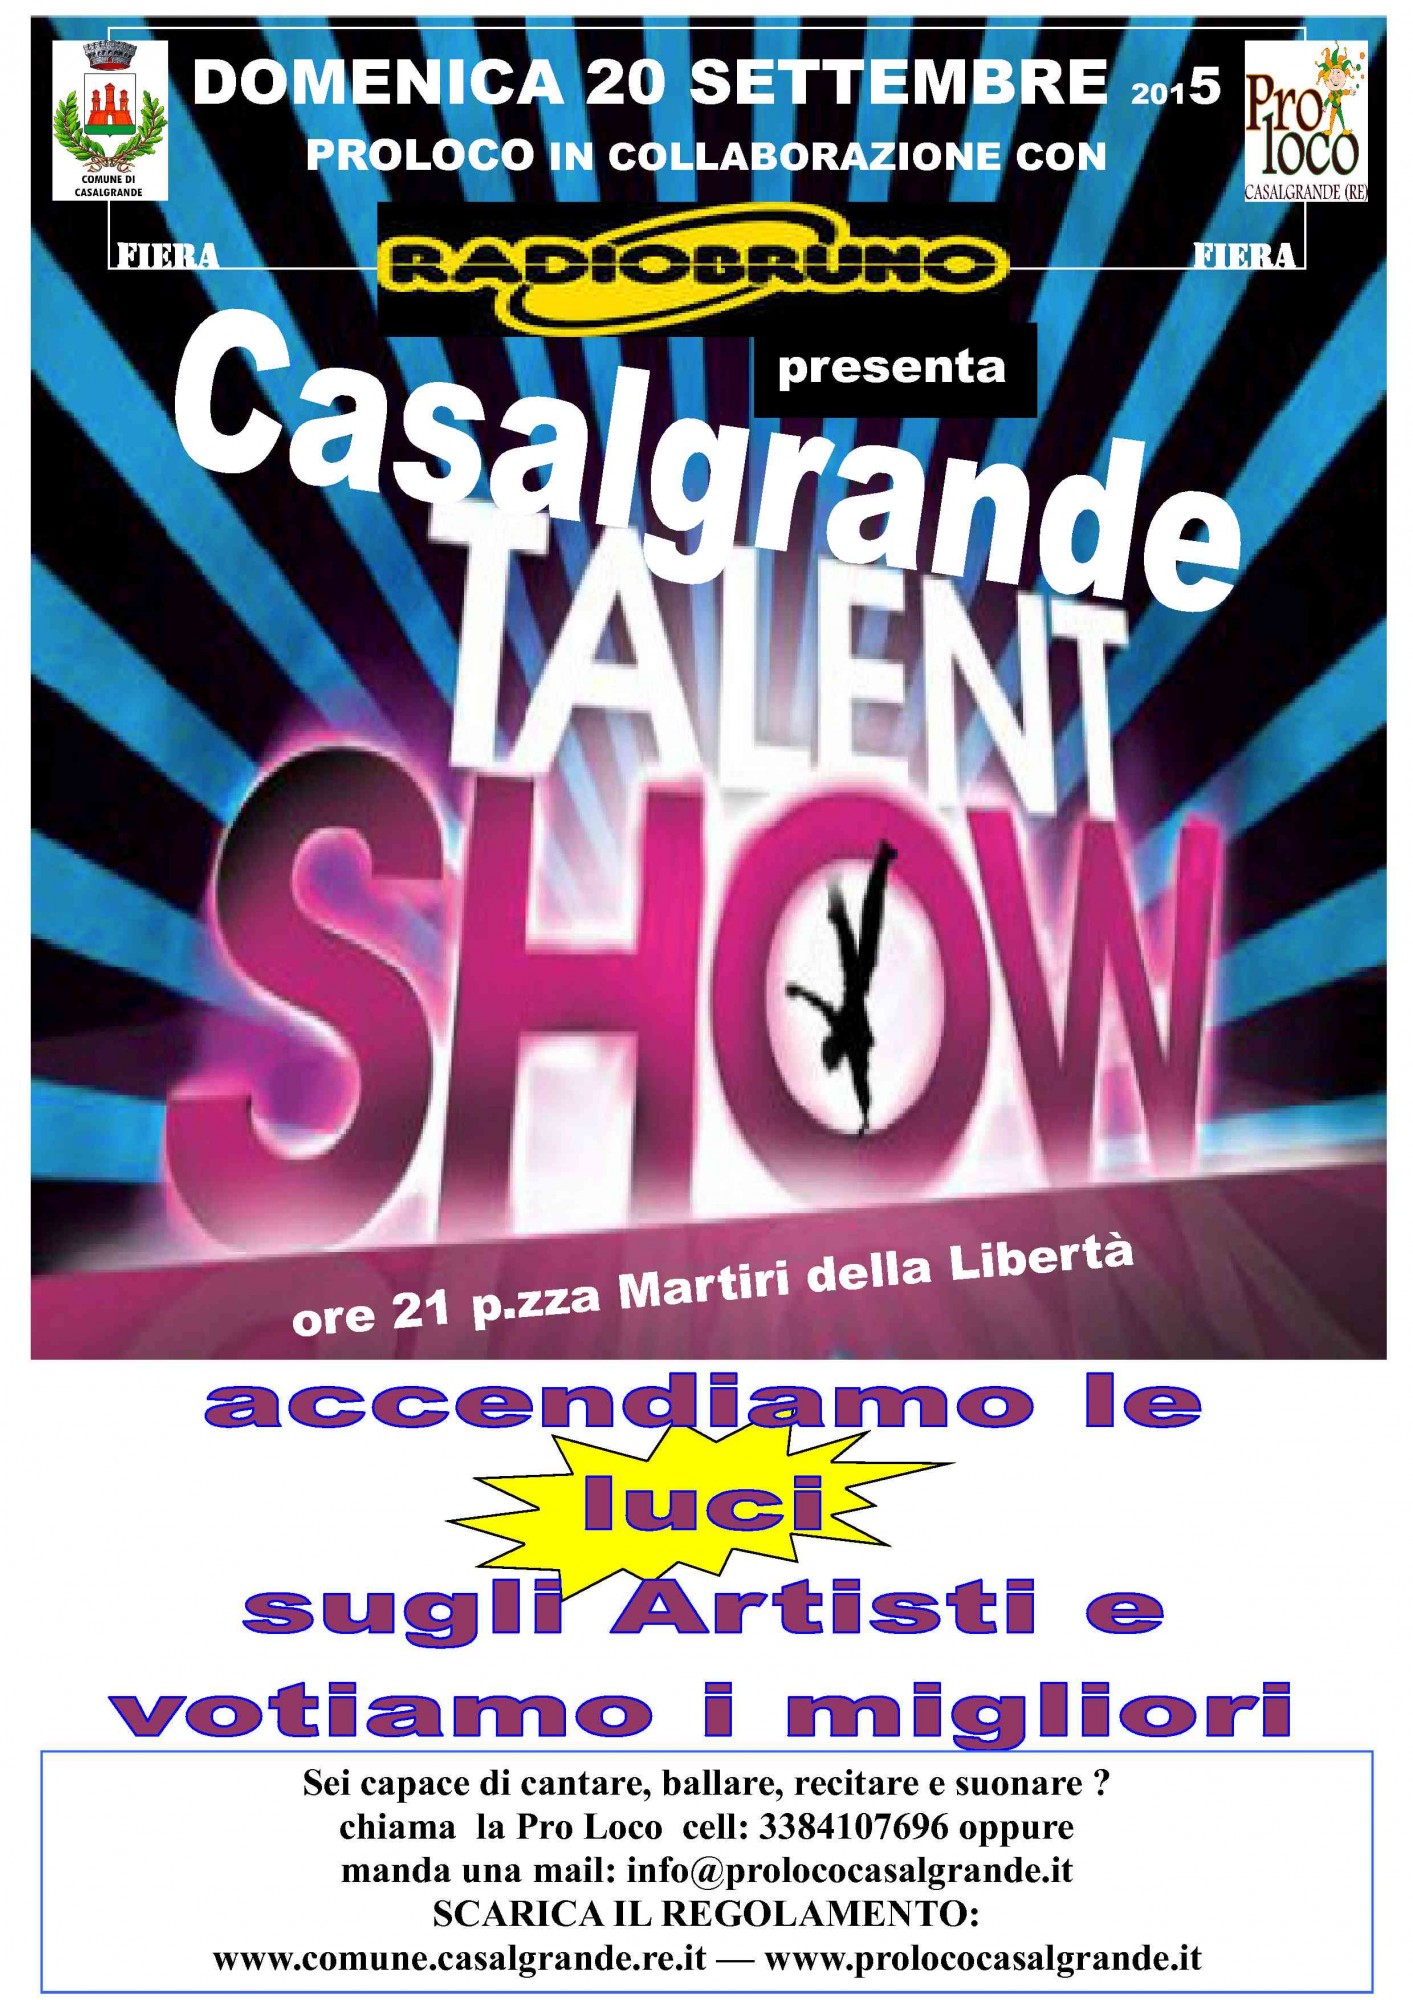 Casalgrande Talent Show 2015